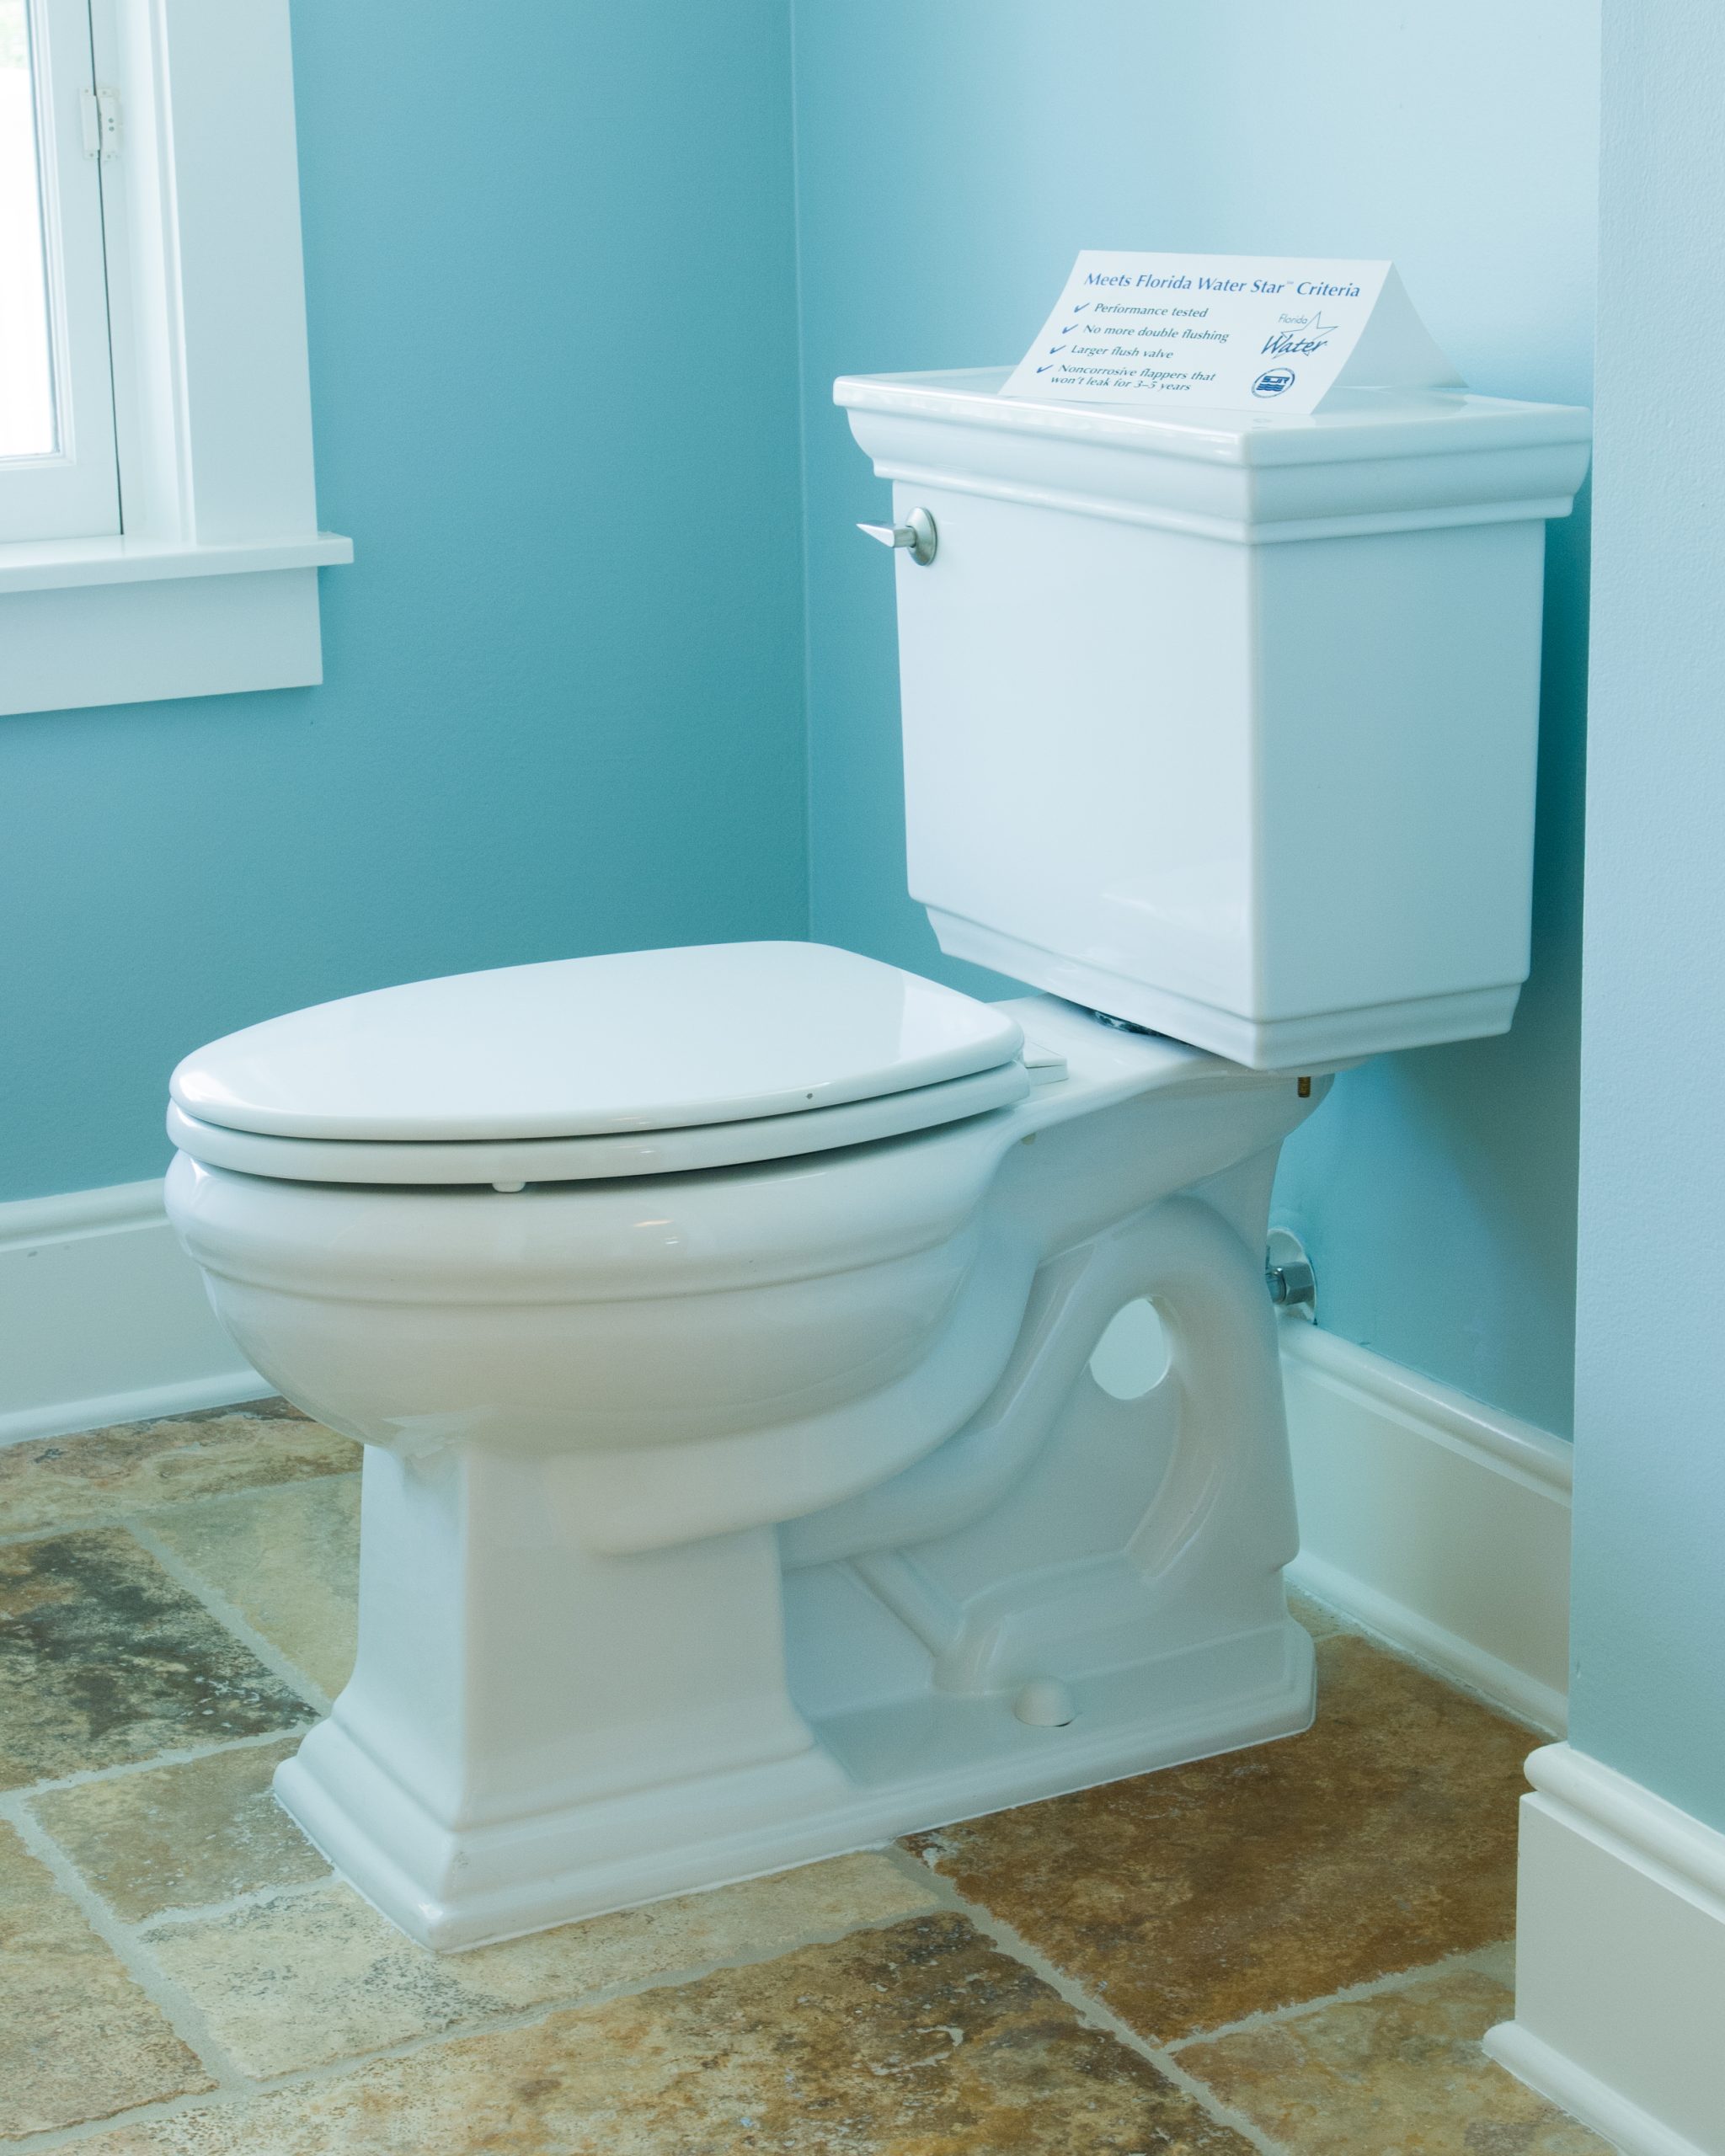 Water-efficient toilet